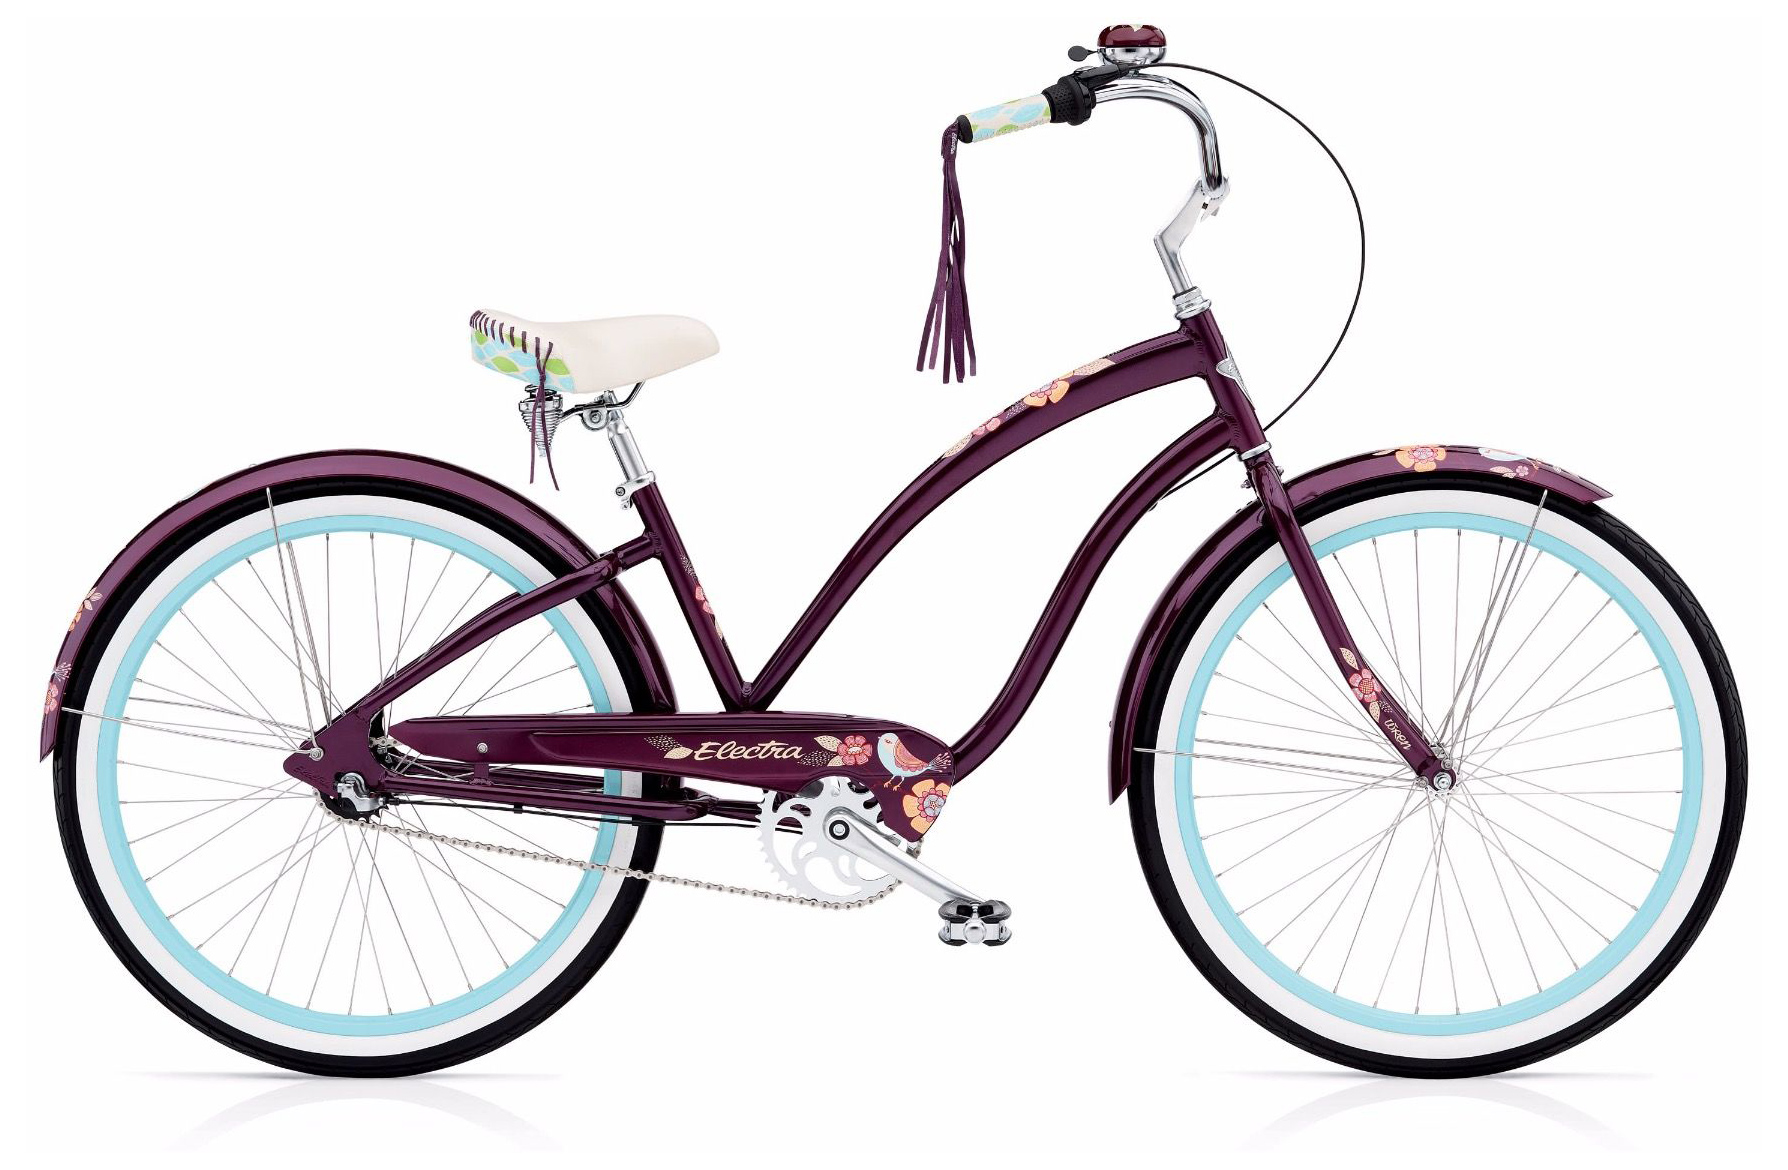  Велосипед Electra Wren 3i 2019